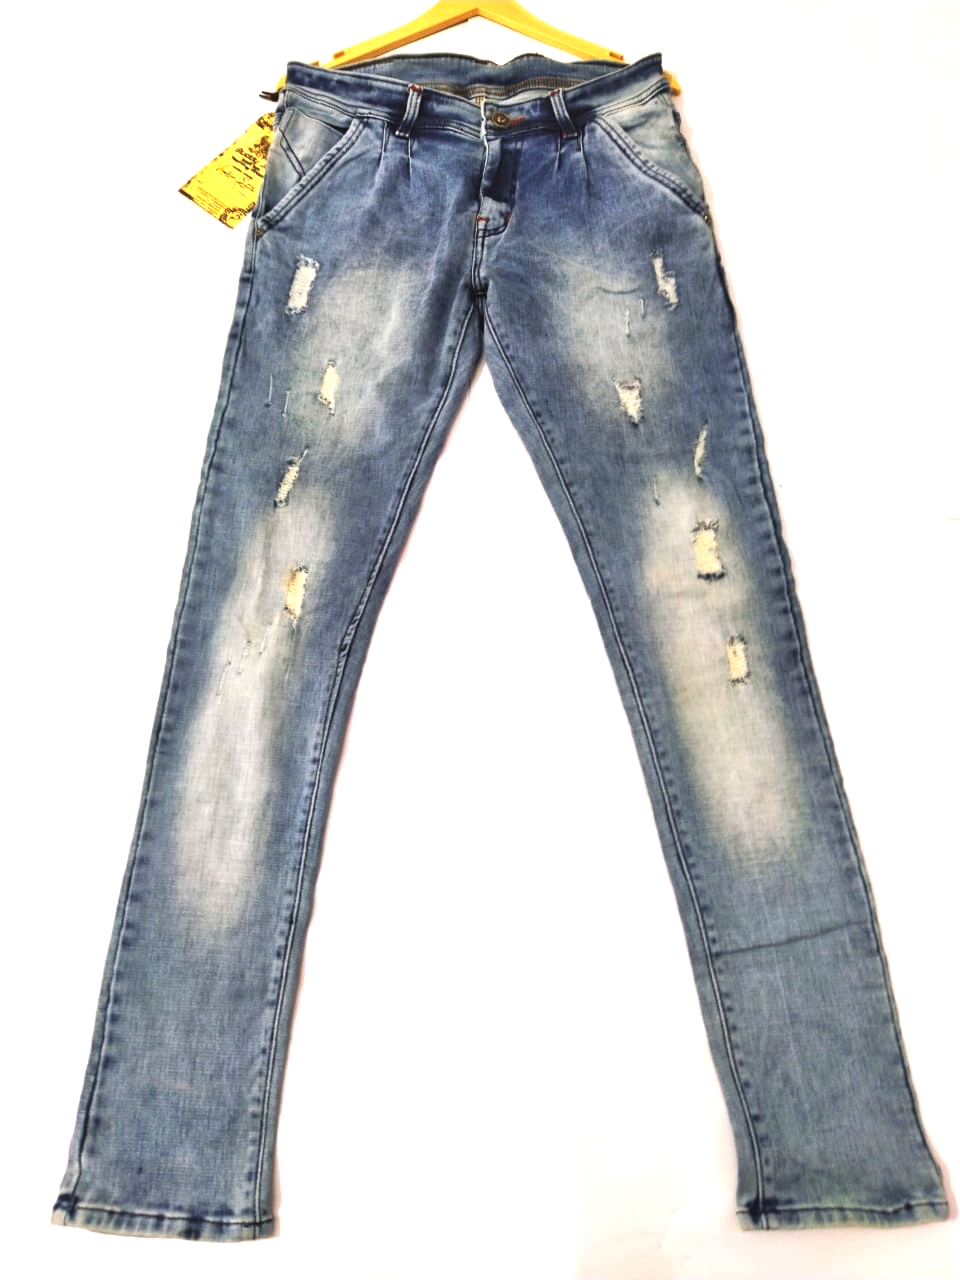 Fashionable Slight Damage Jeans